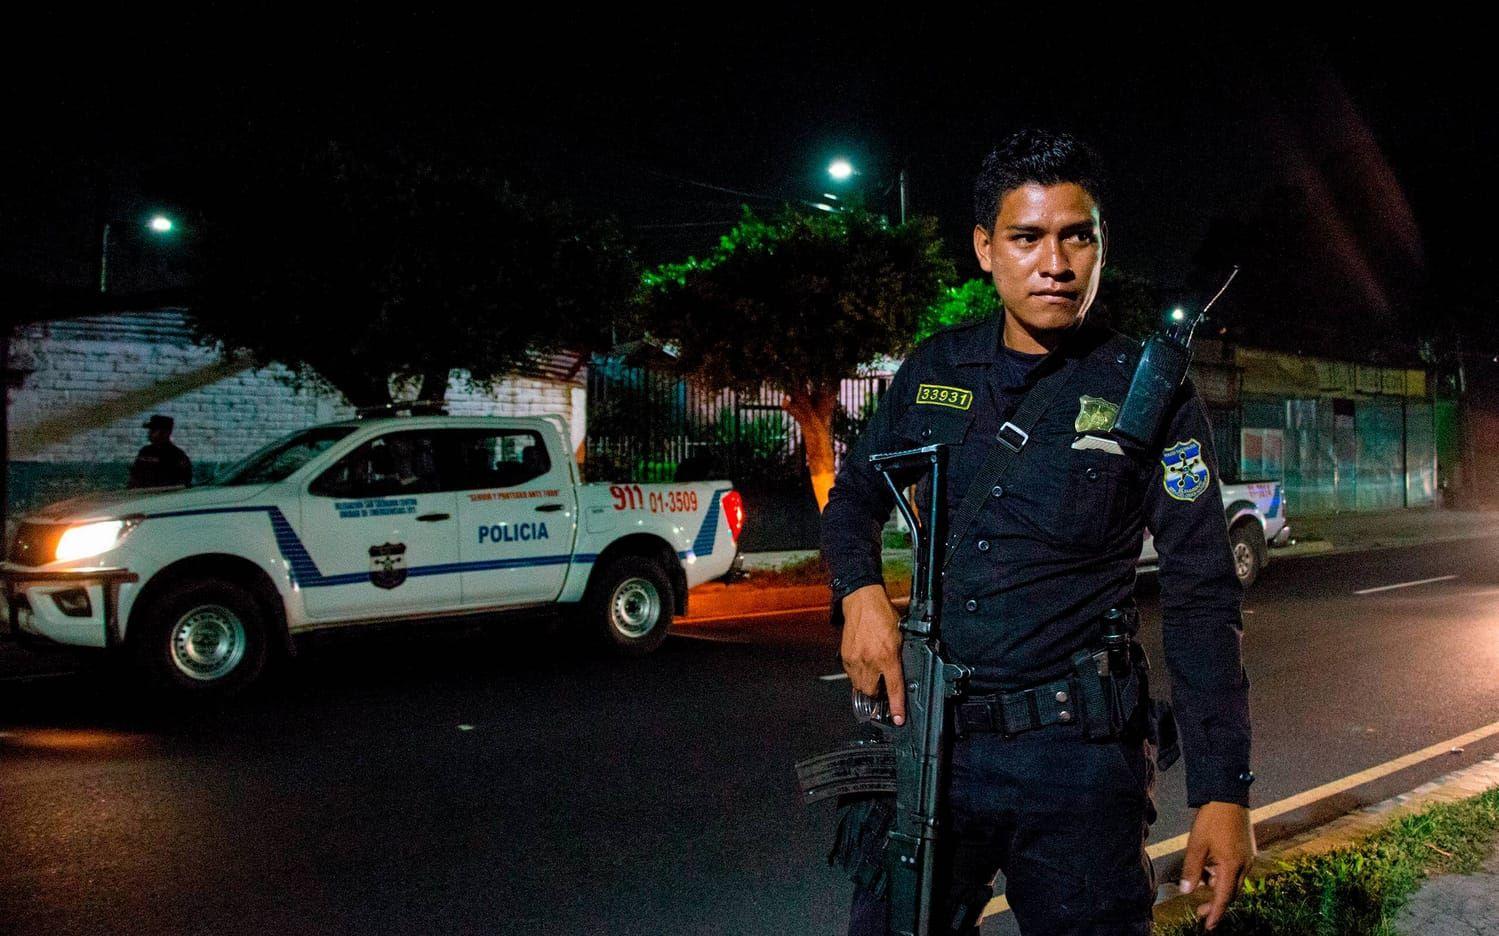 En polis på kvällspatrullering i San  Salvador.  Fortfarande dödas runt 10 personer om dagen i landet.